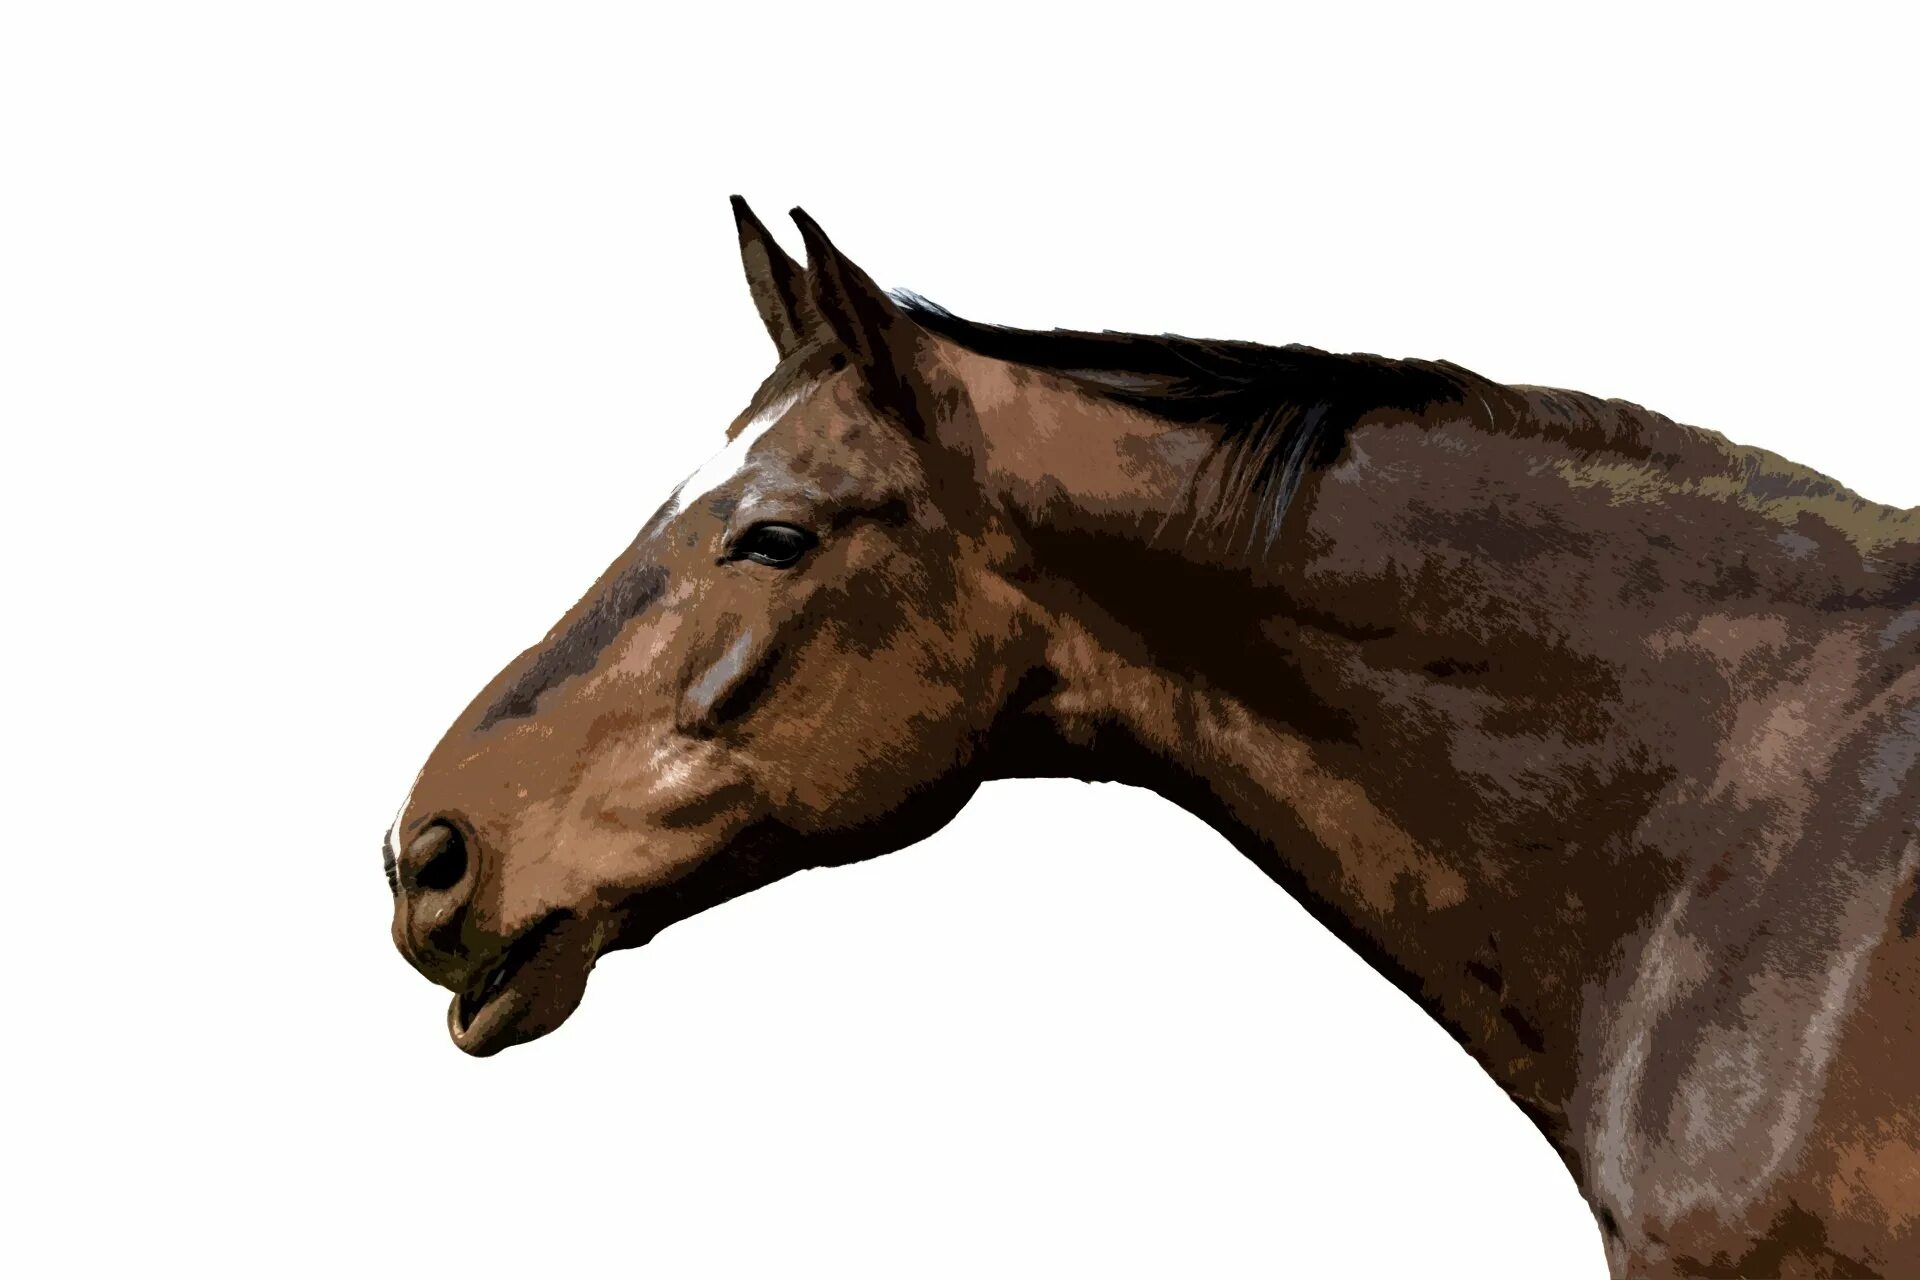 Голова лошади. Голова лошади на белом фоне. Коричневый конь. Лошадь в профиль.